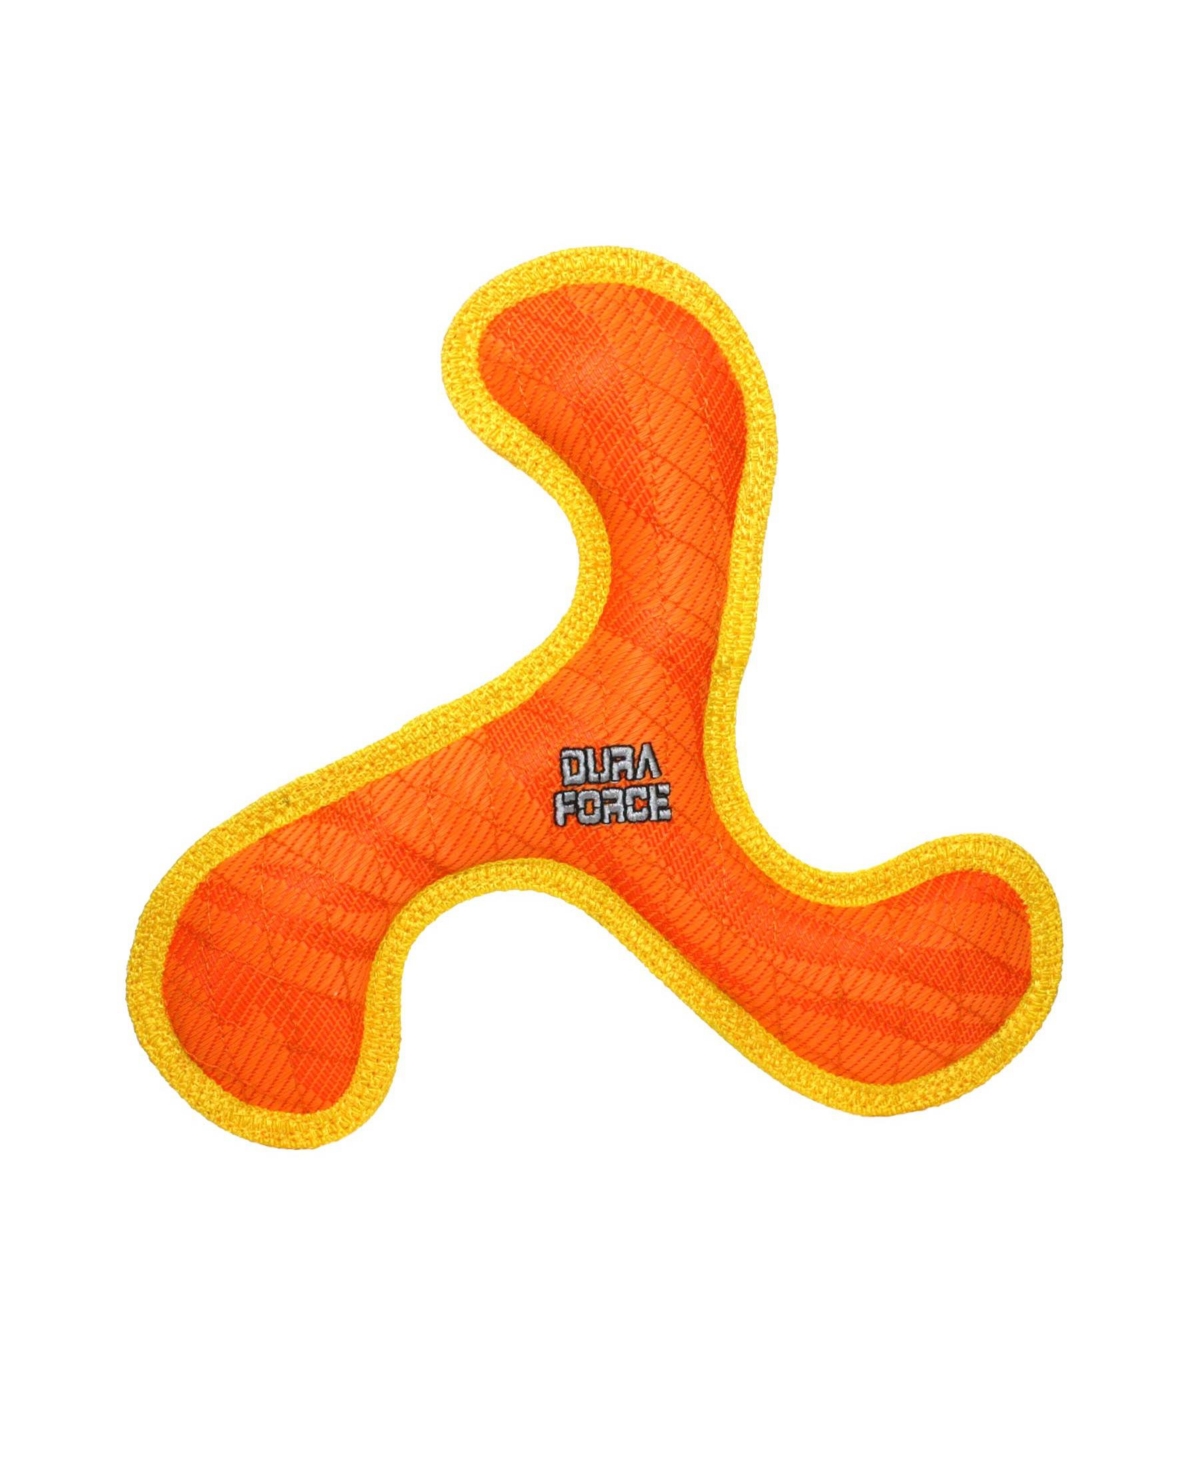 Boomerang Tiger Orange-Yellow, Dog Toy - Bright Orange